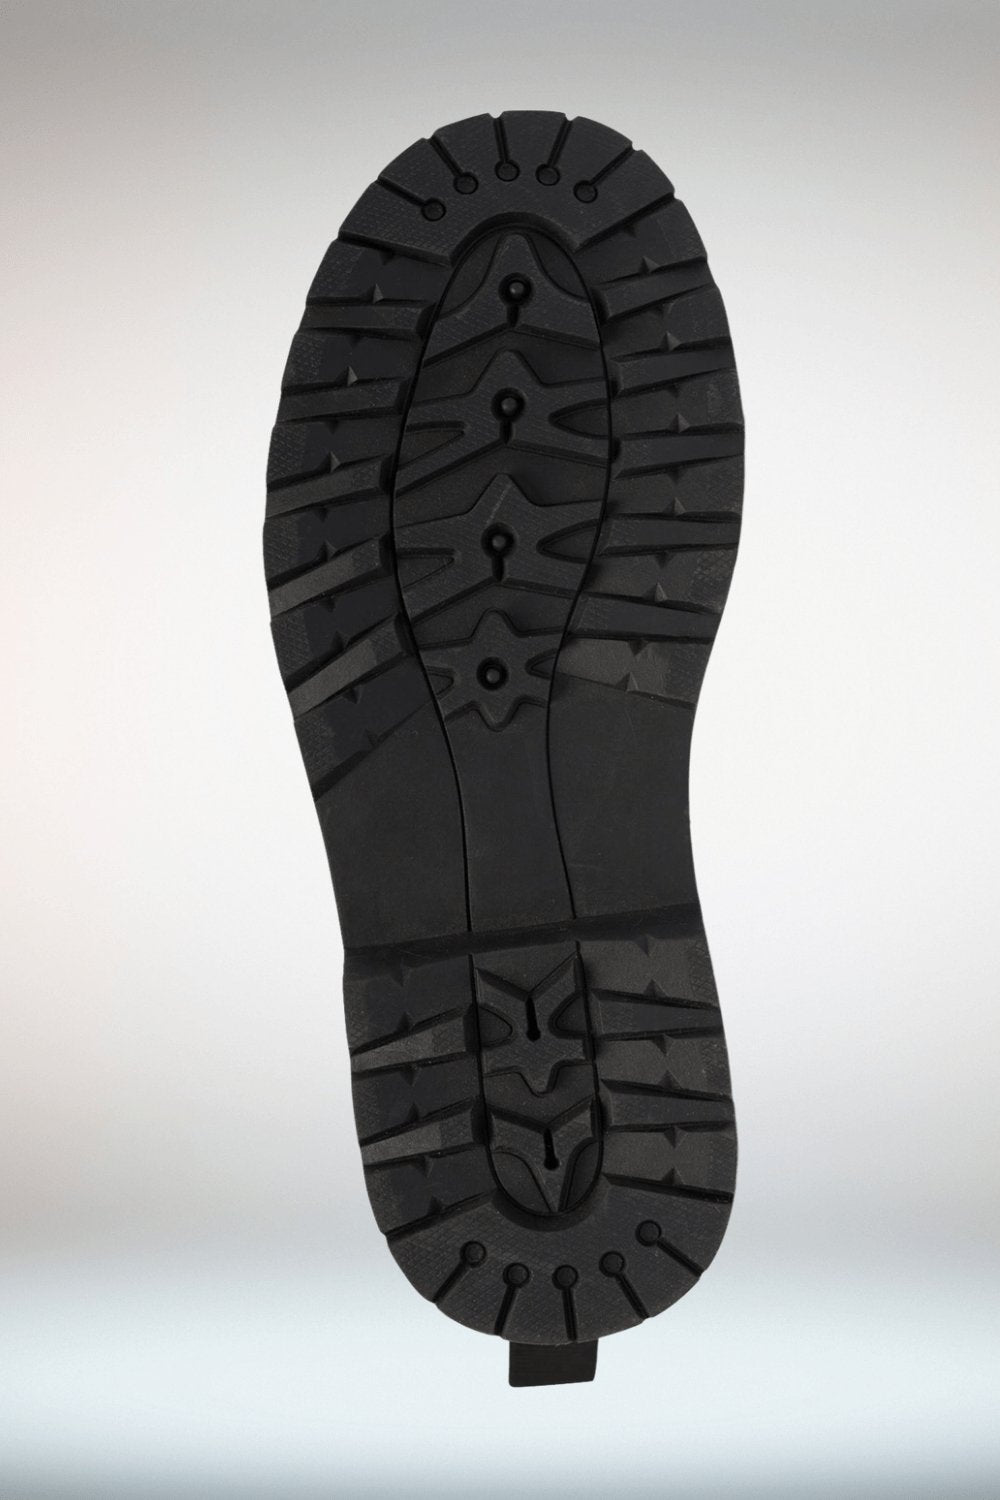 Zebra Print Lace Up Ankle Boots - Black Sole - TGC Boutique - Ankle Boots